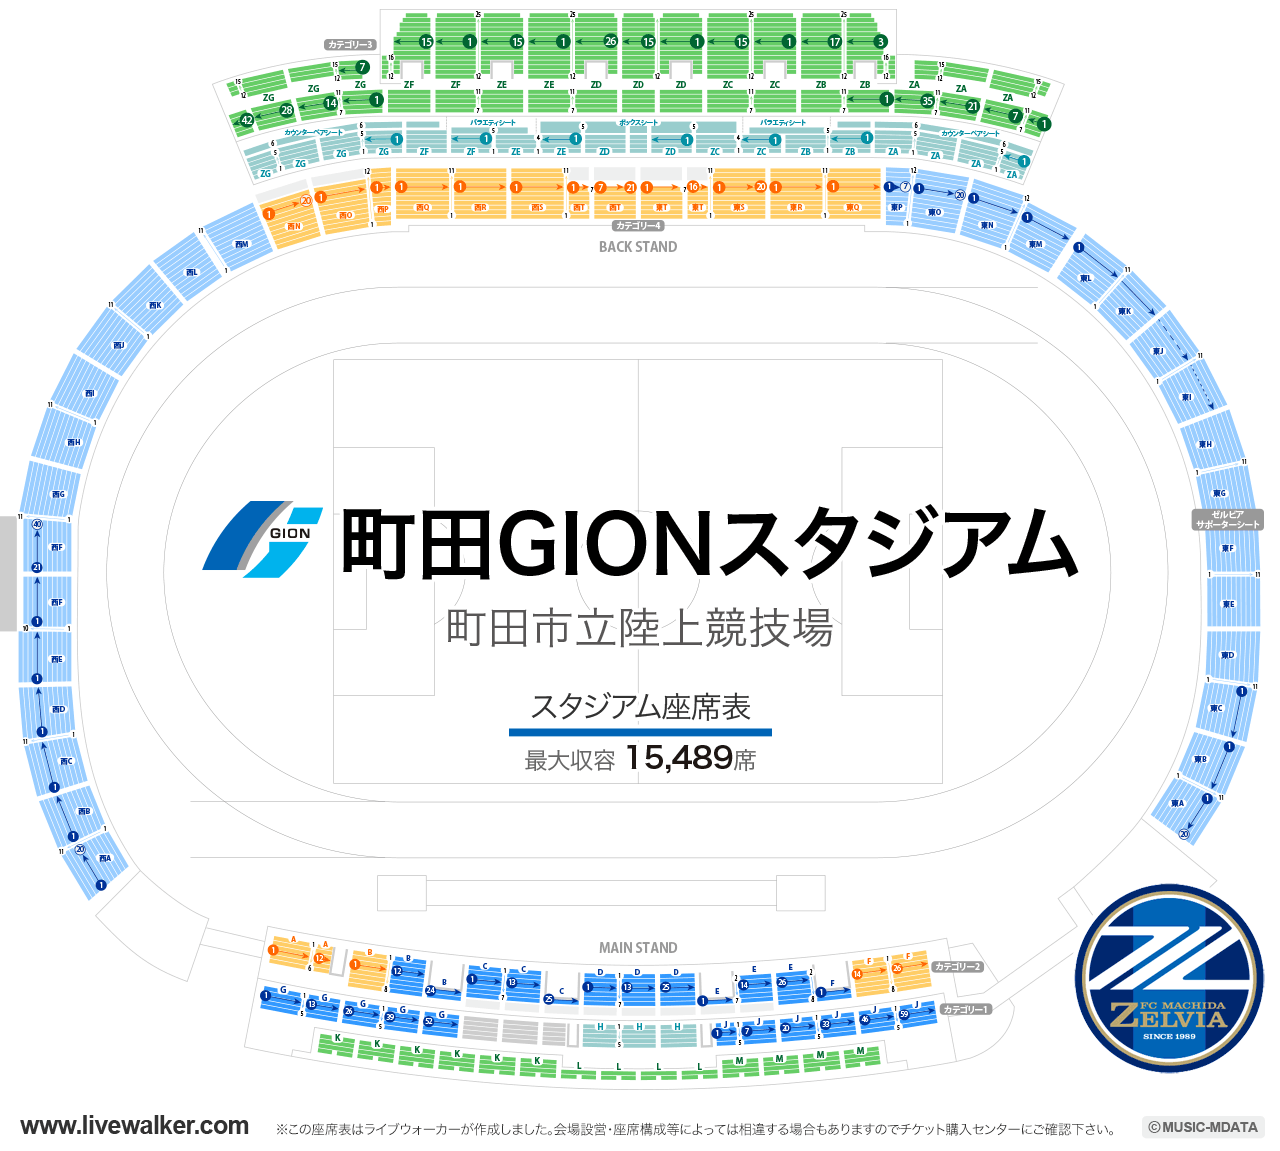 町田GIONスタジアムの座席表